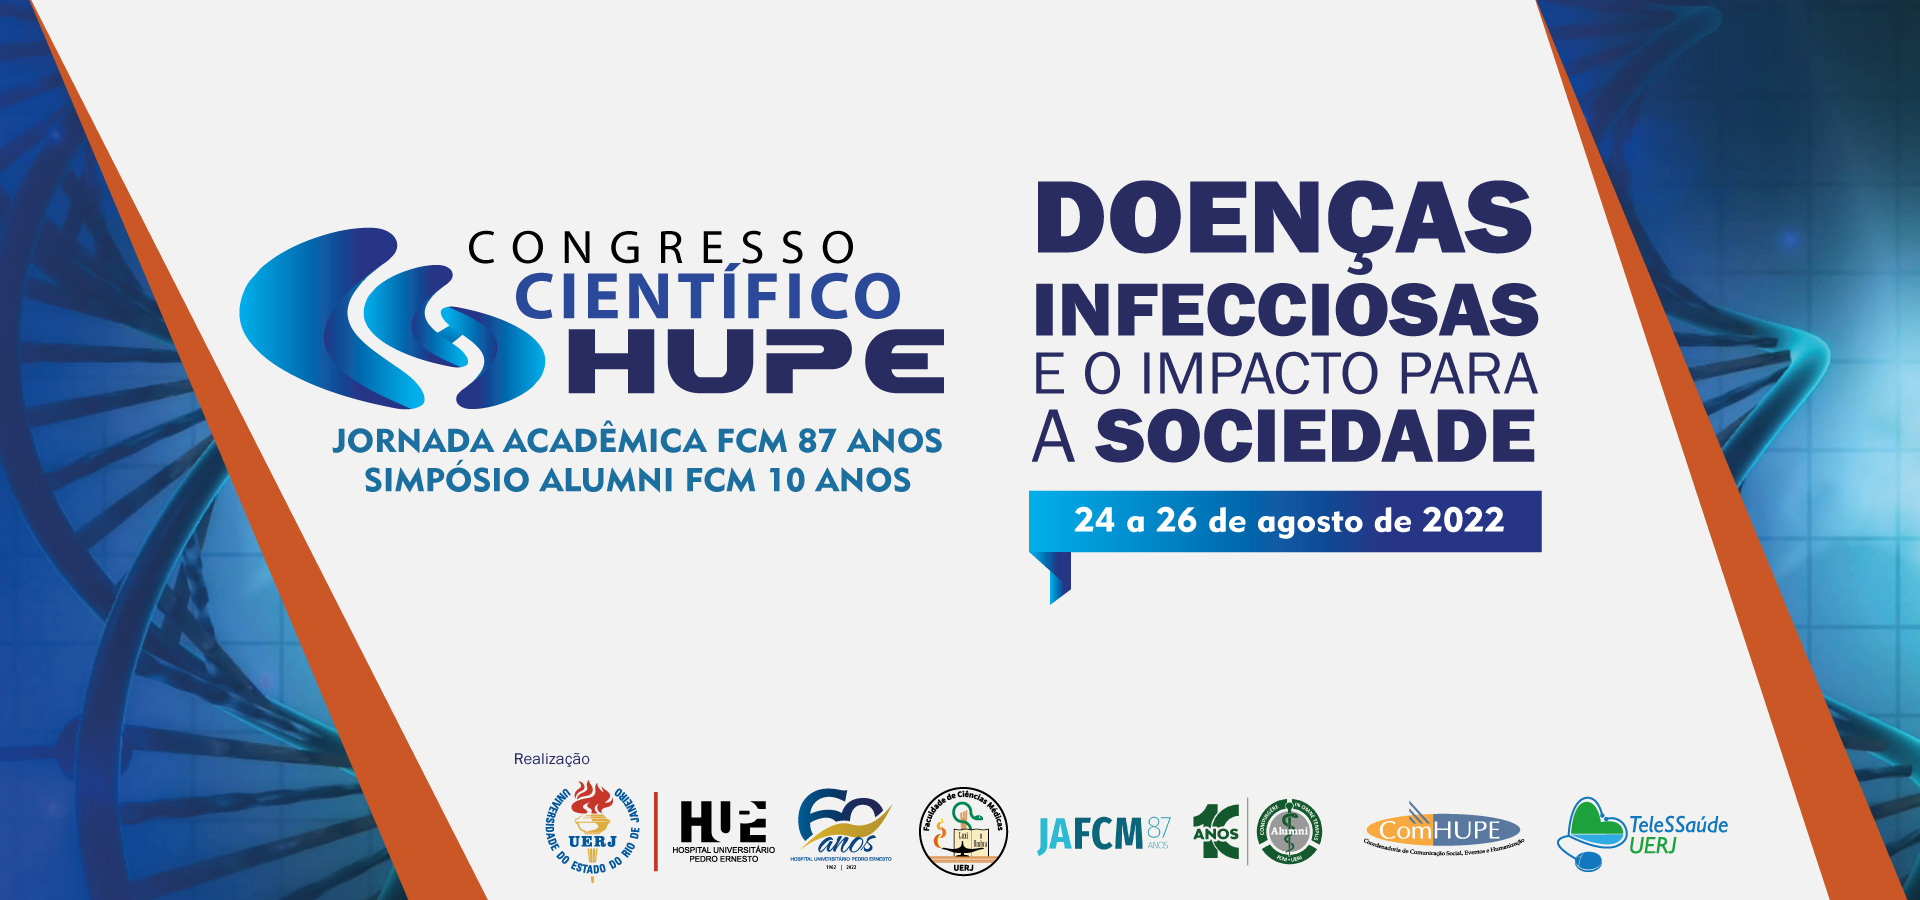 60º Congresso Científico do Hupe “Doenças Infecciosas e o impacto para a sociedade”, de 24 a 26 de agosto: conheça programação e prazos